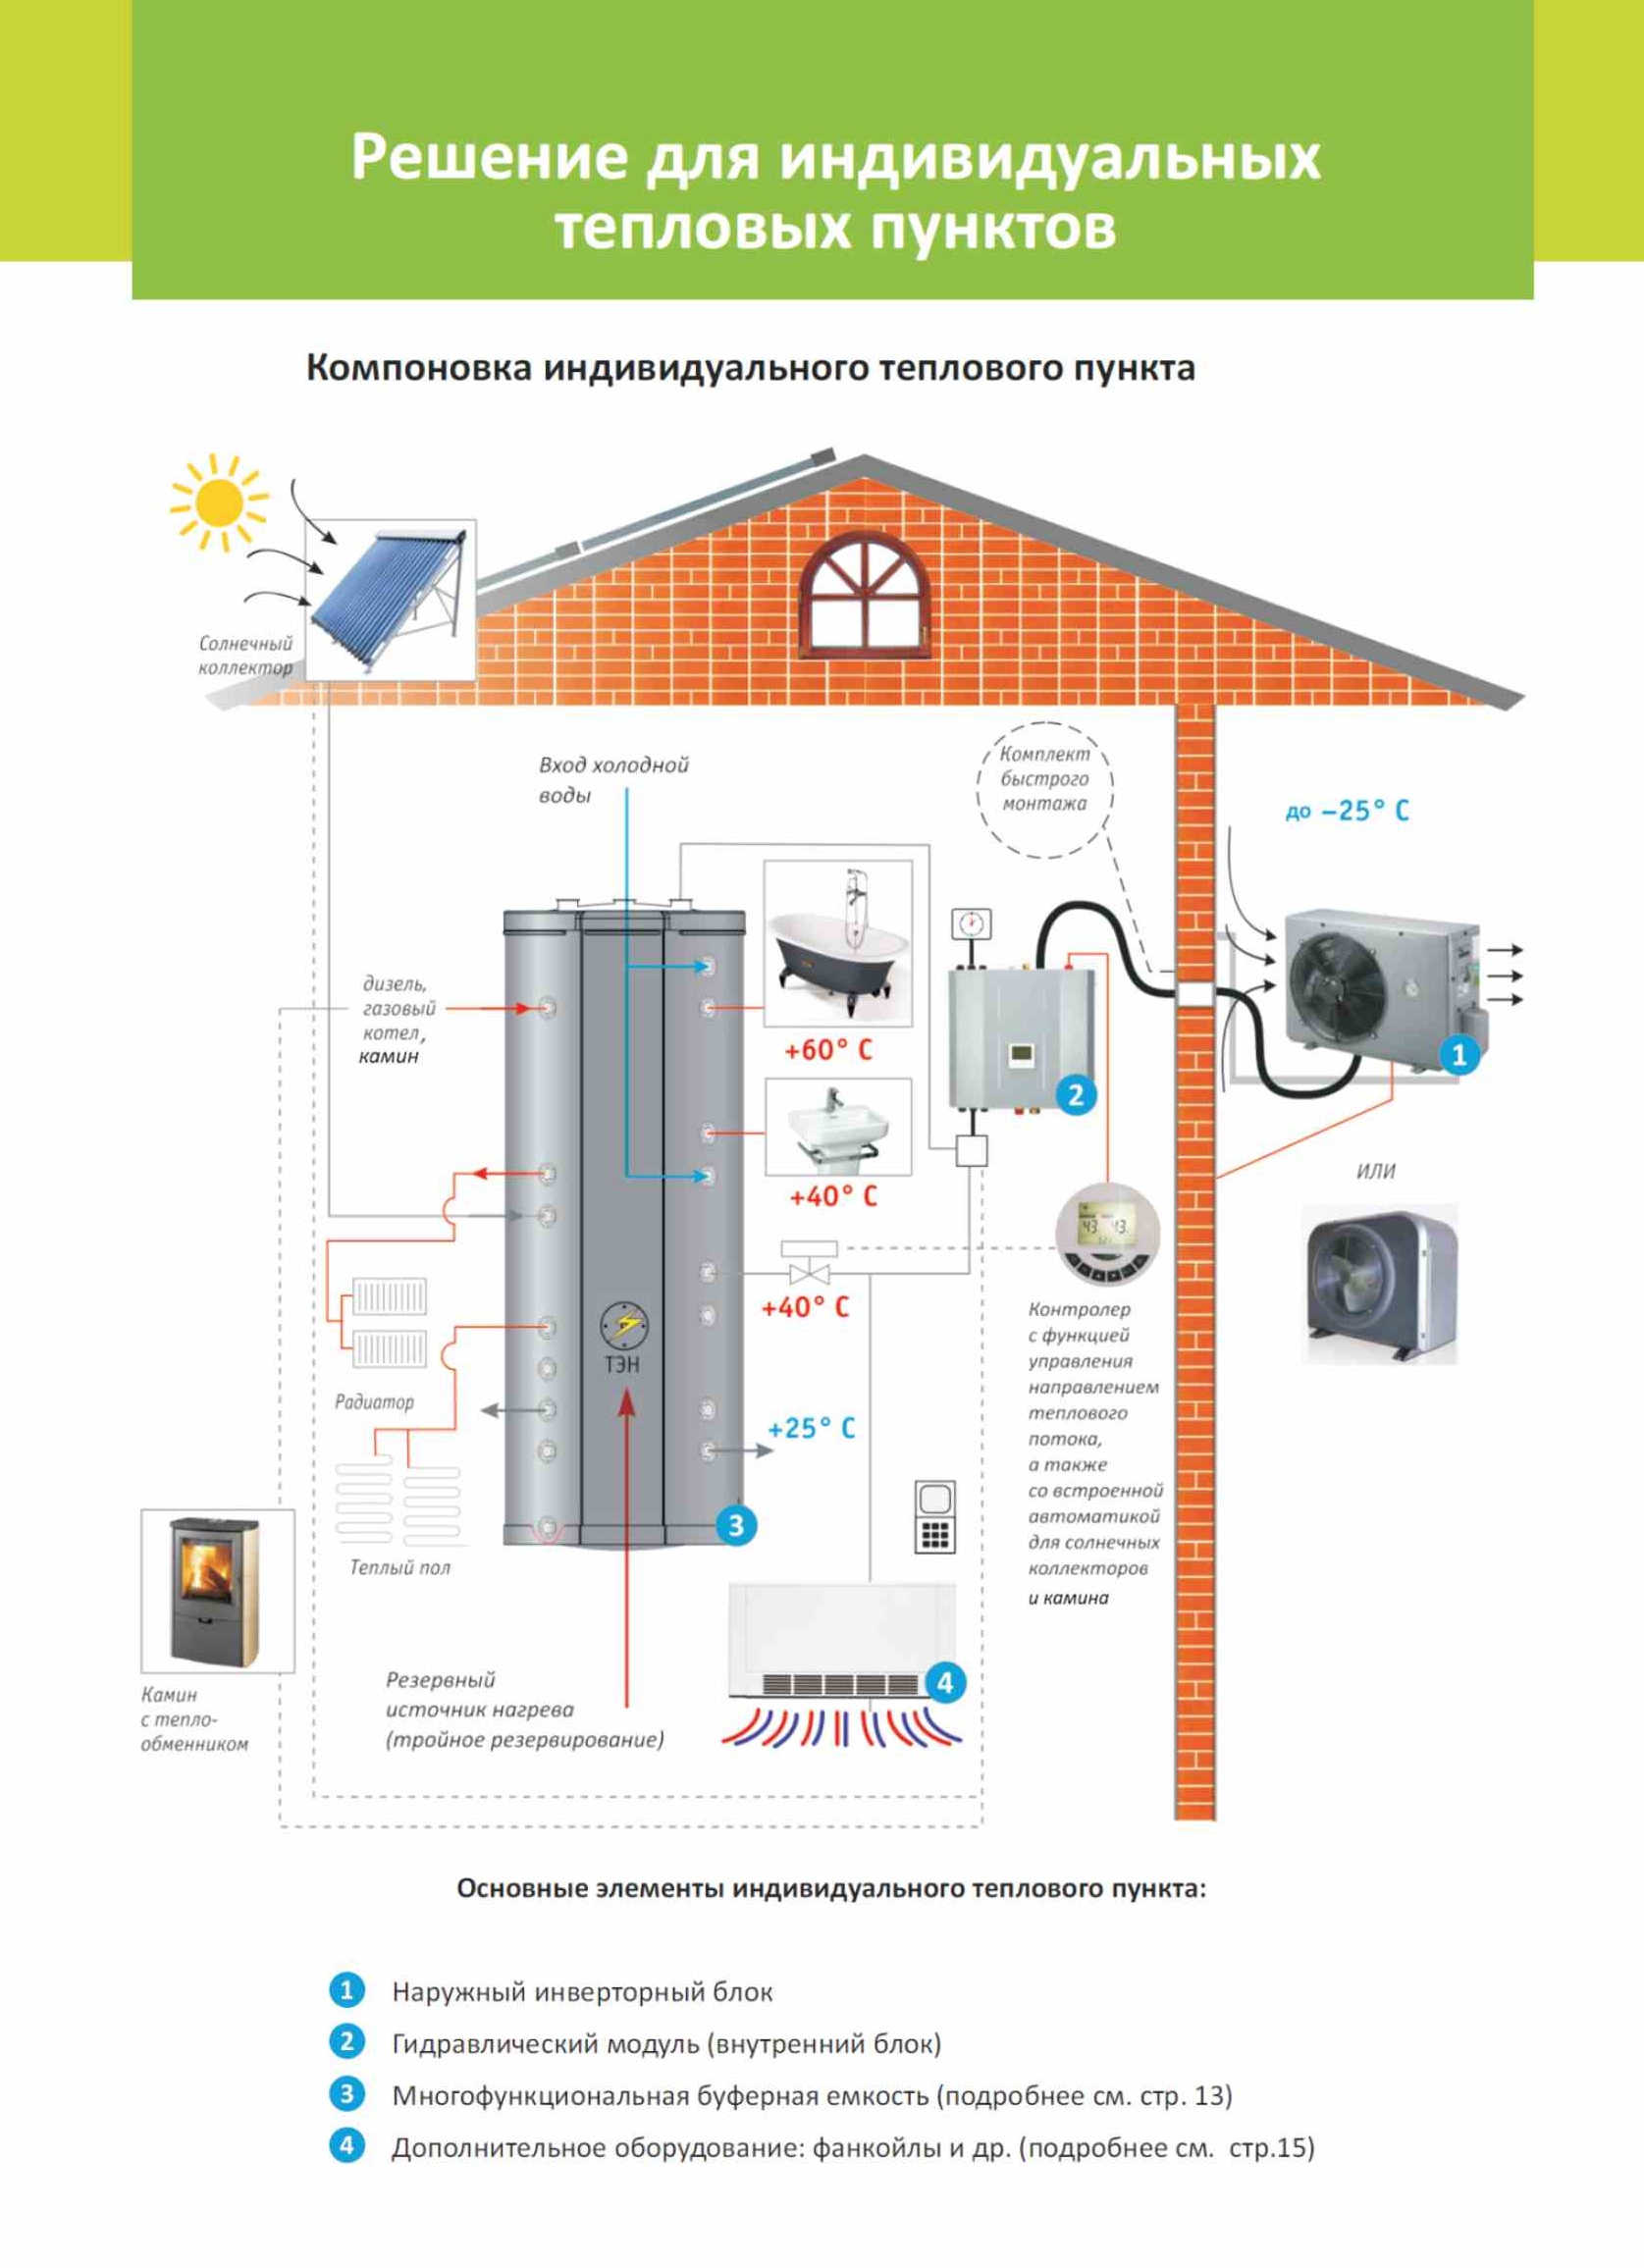 Энергоэффективные системы отопления. Экономим на отоплении в 4 раза.